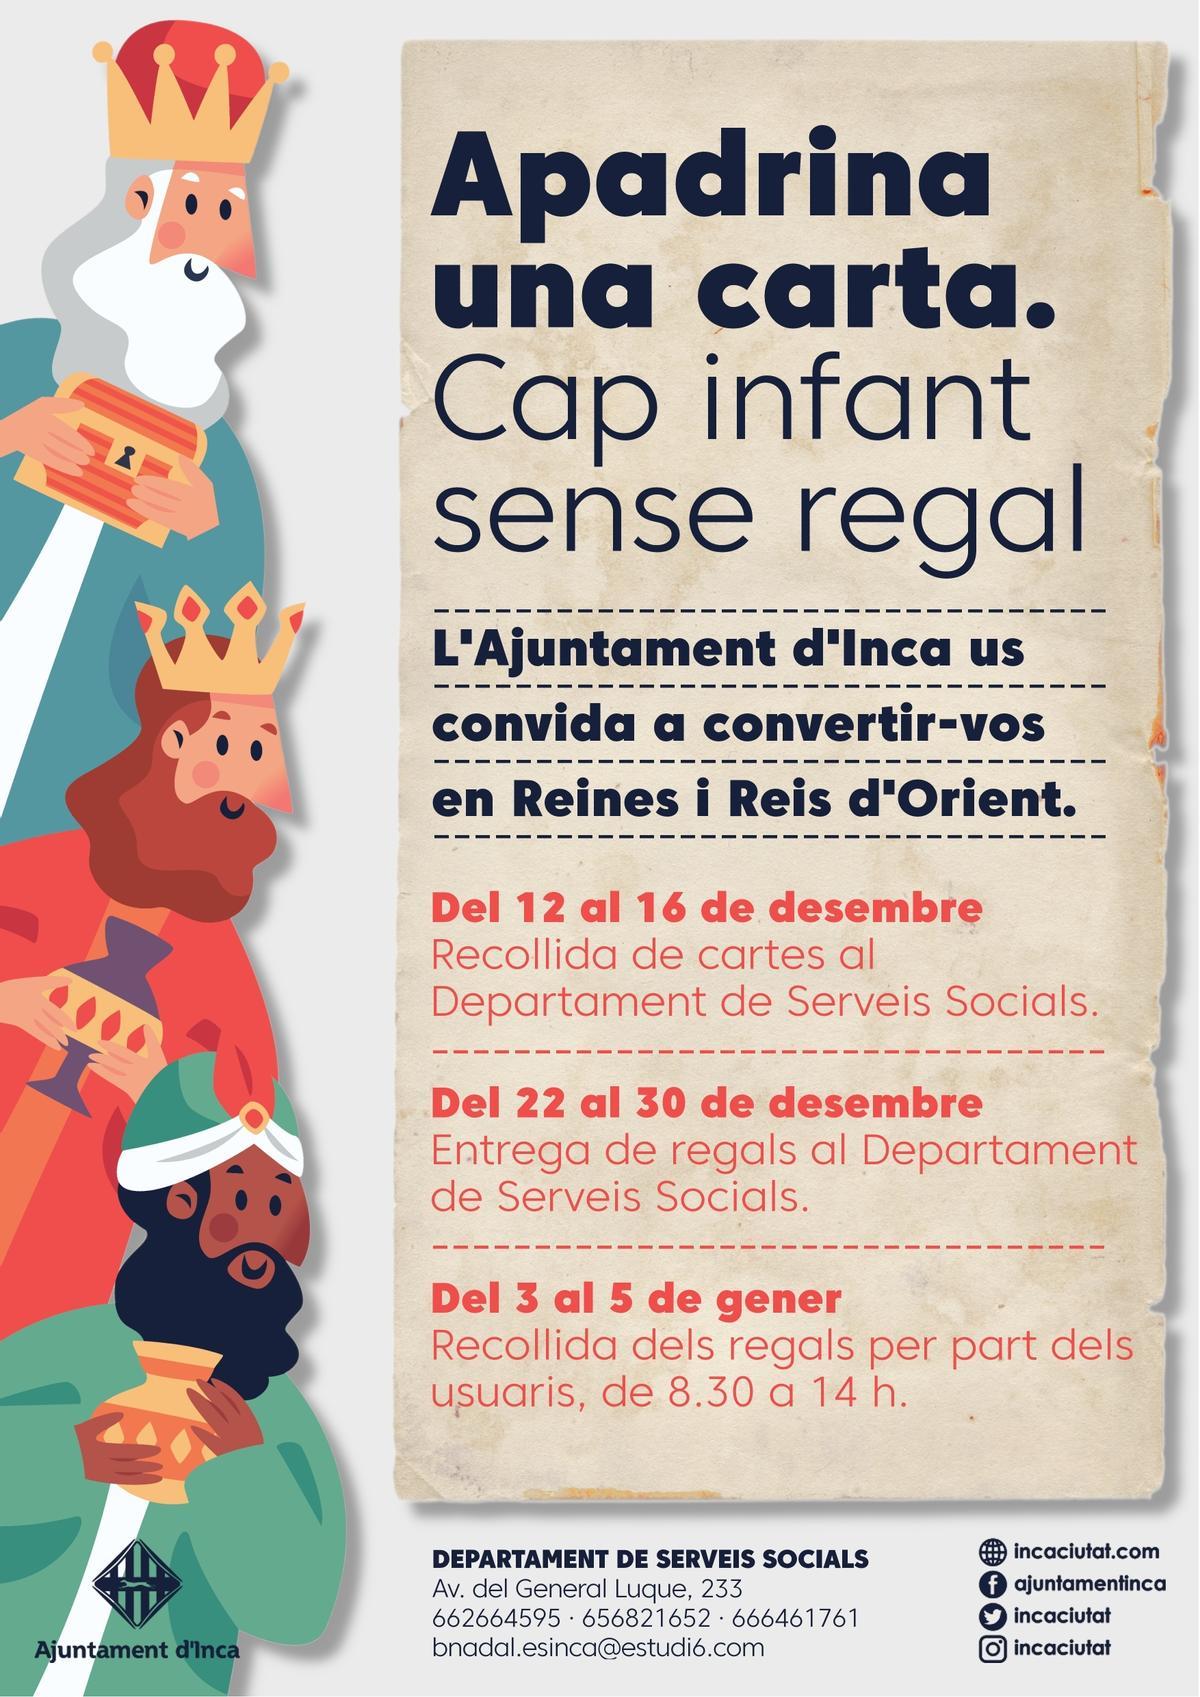 Navidad 2022: Inca consolida la campaña solidaria de apadrinar cartas de los Reyes